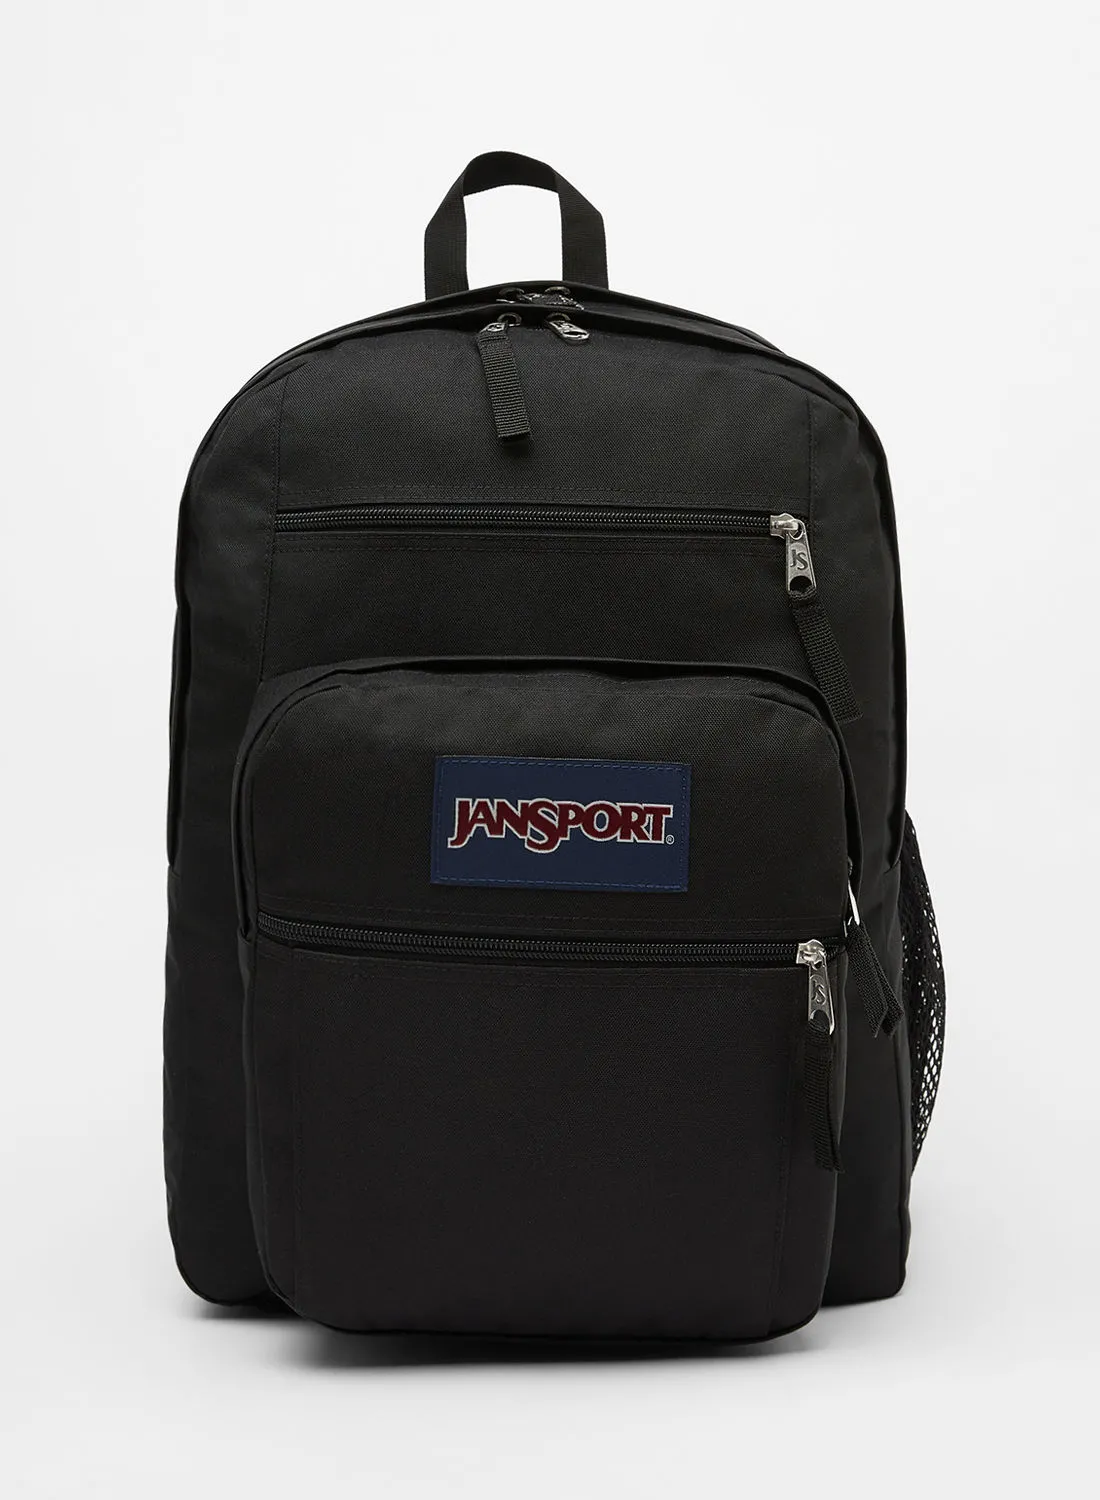 JANSPORT Big Student Backpack Black